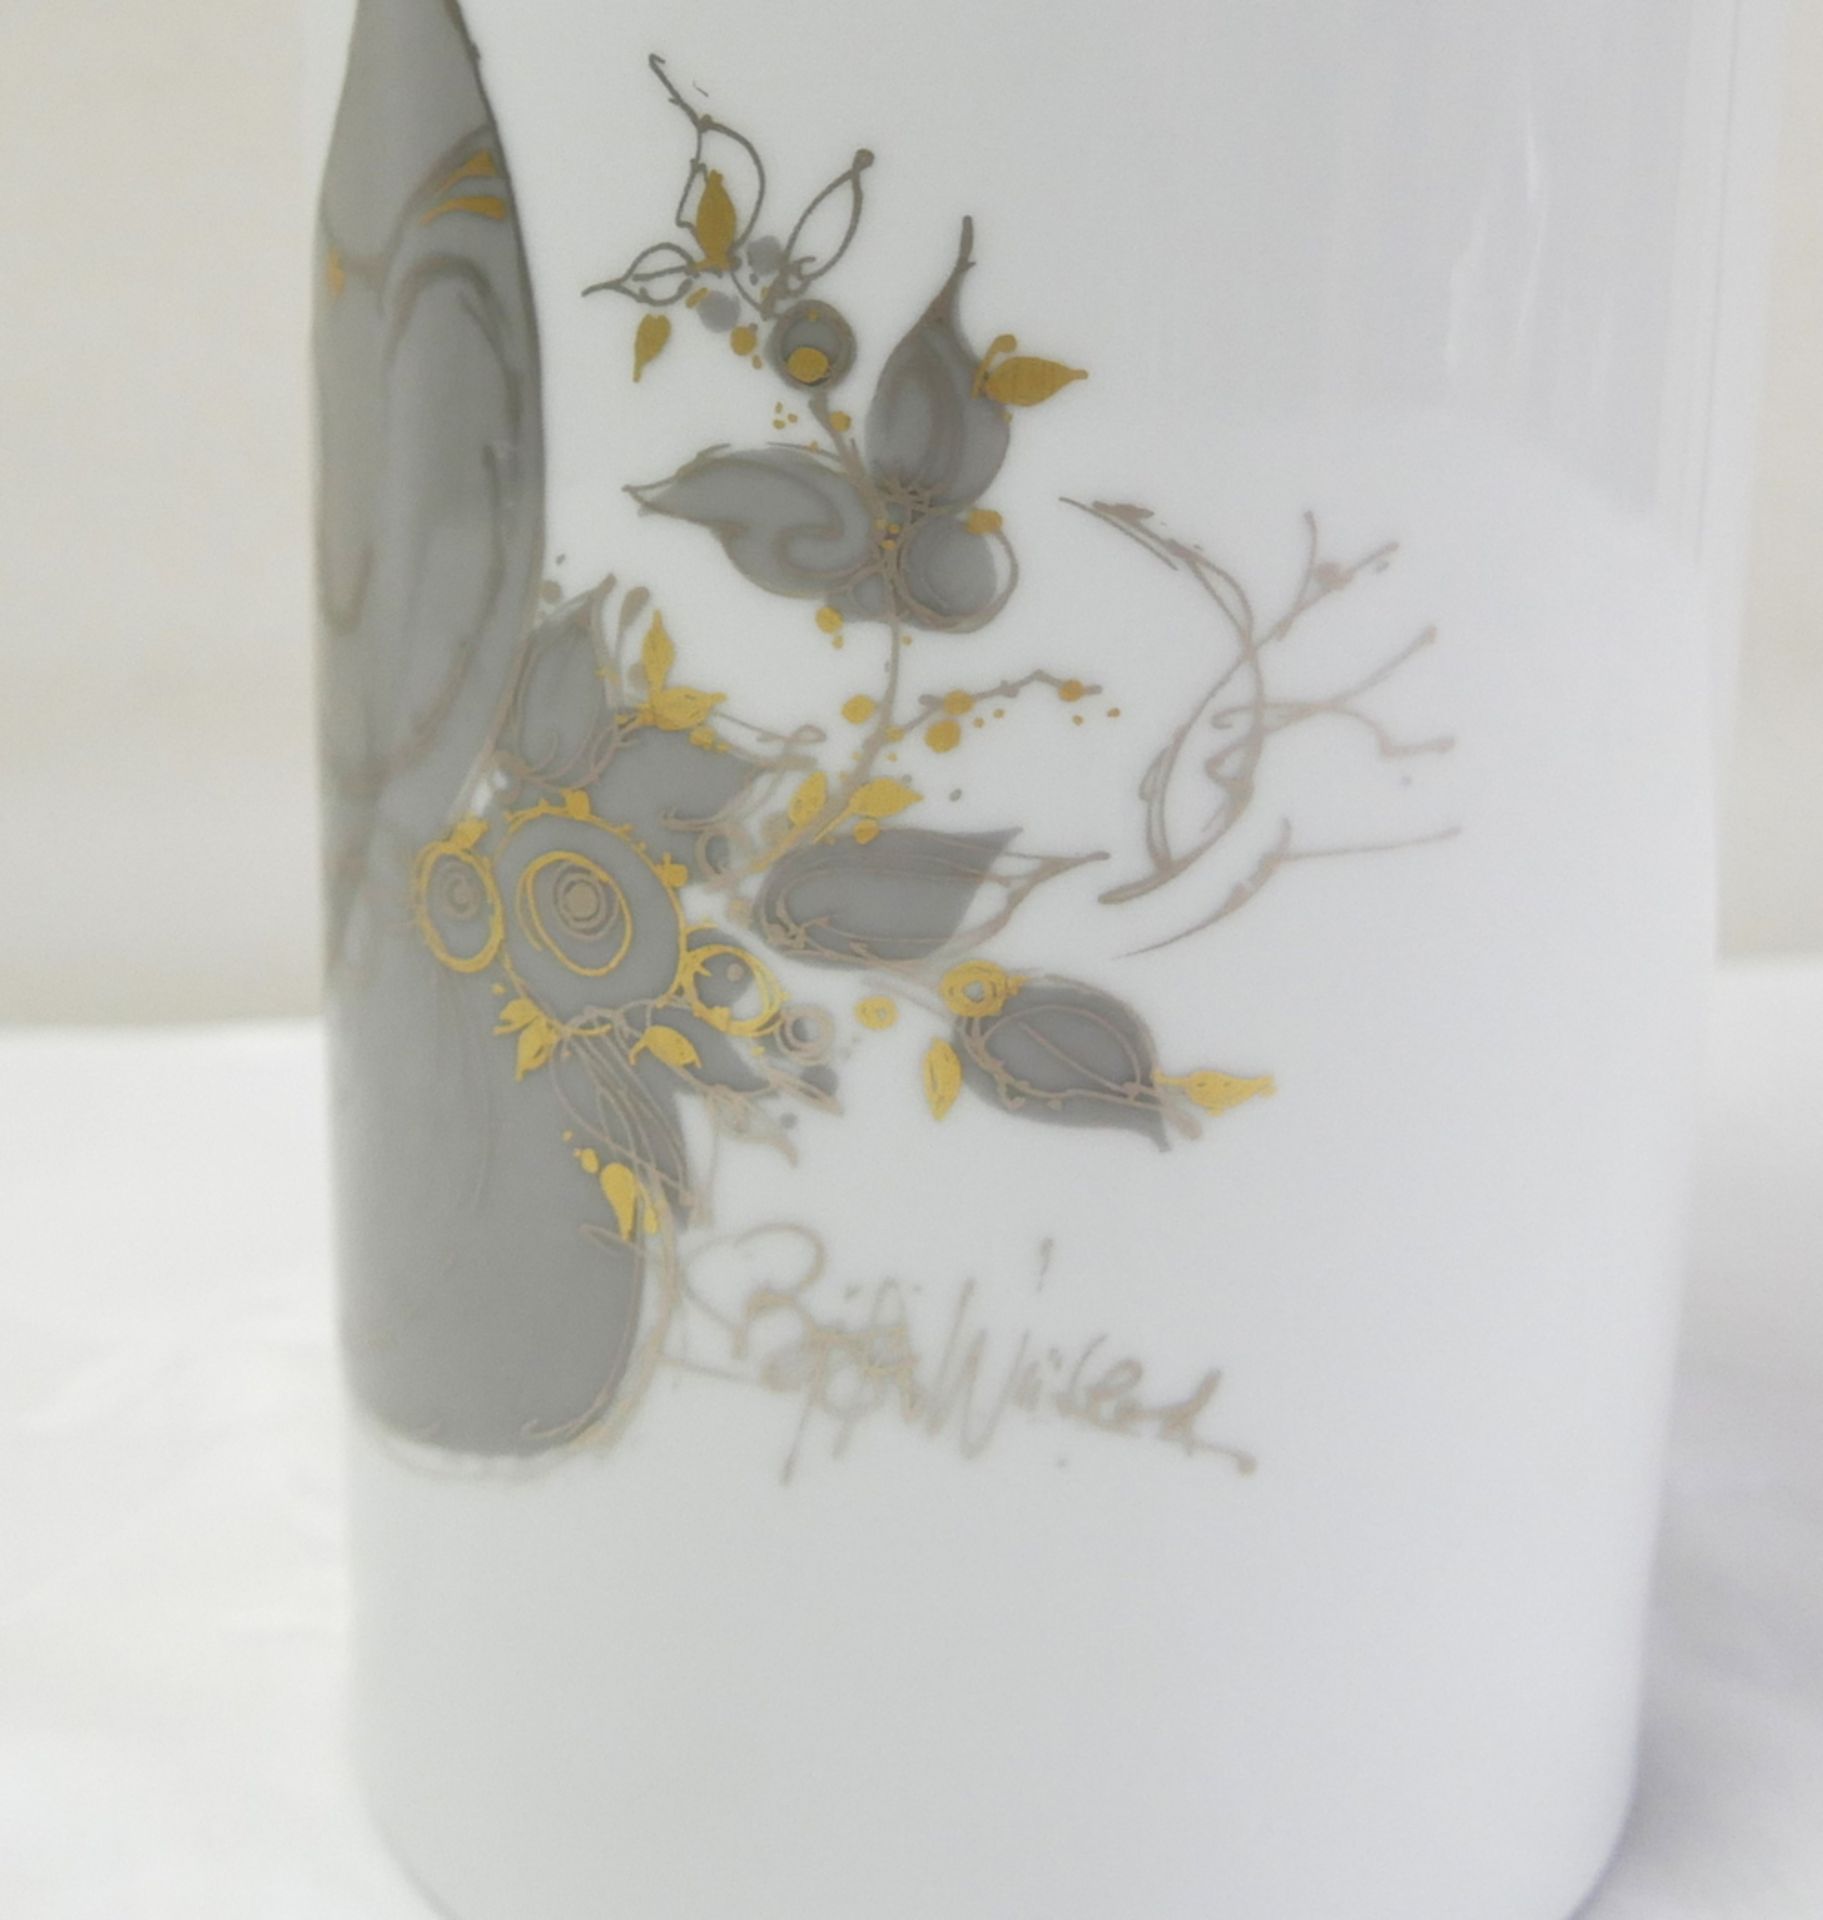 Rosenthal Studio Linie "Björn Wiinblad" Porzellan Vase. Höhe ca. 24,5 cm, Durchmesser ca. 11,5 cm - Bild 2 aus 3